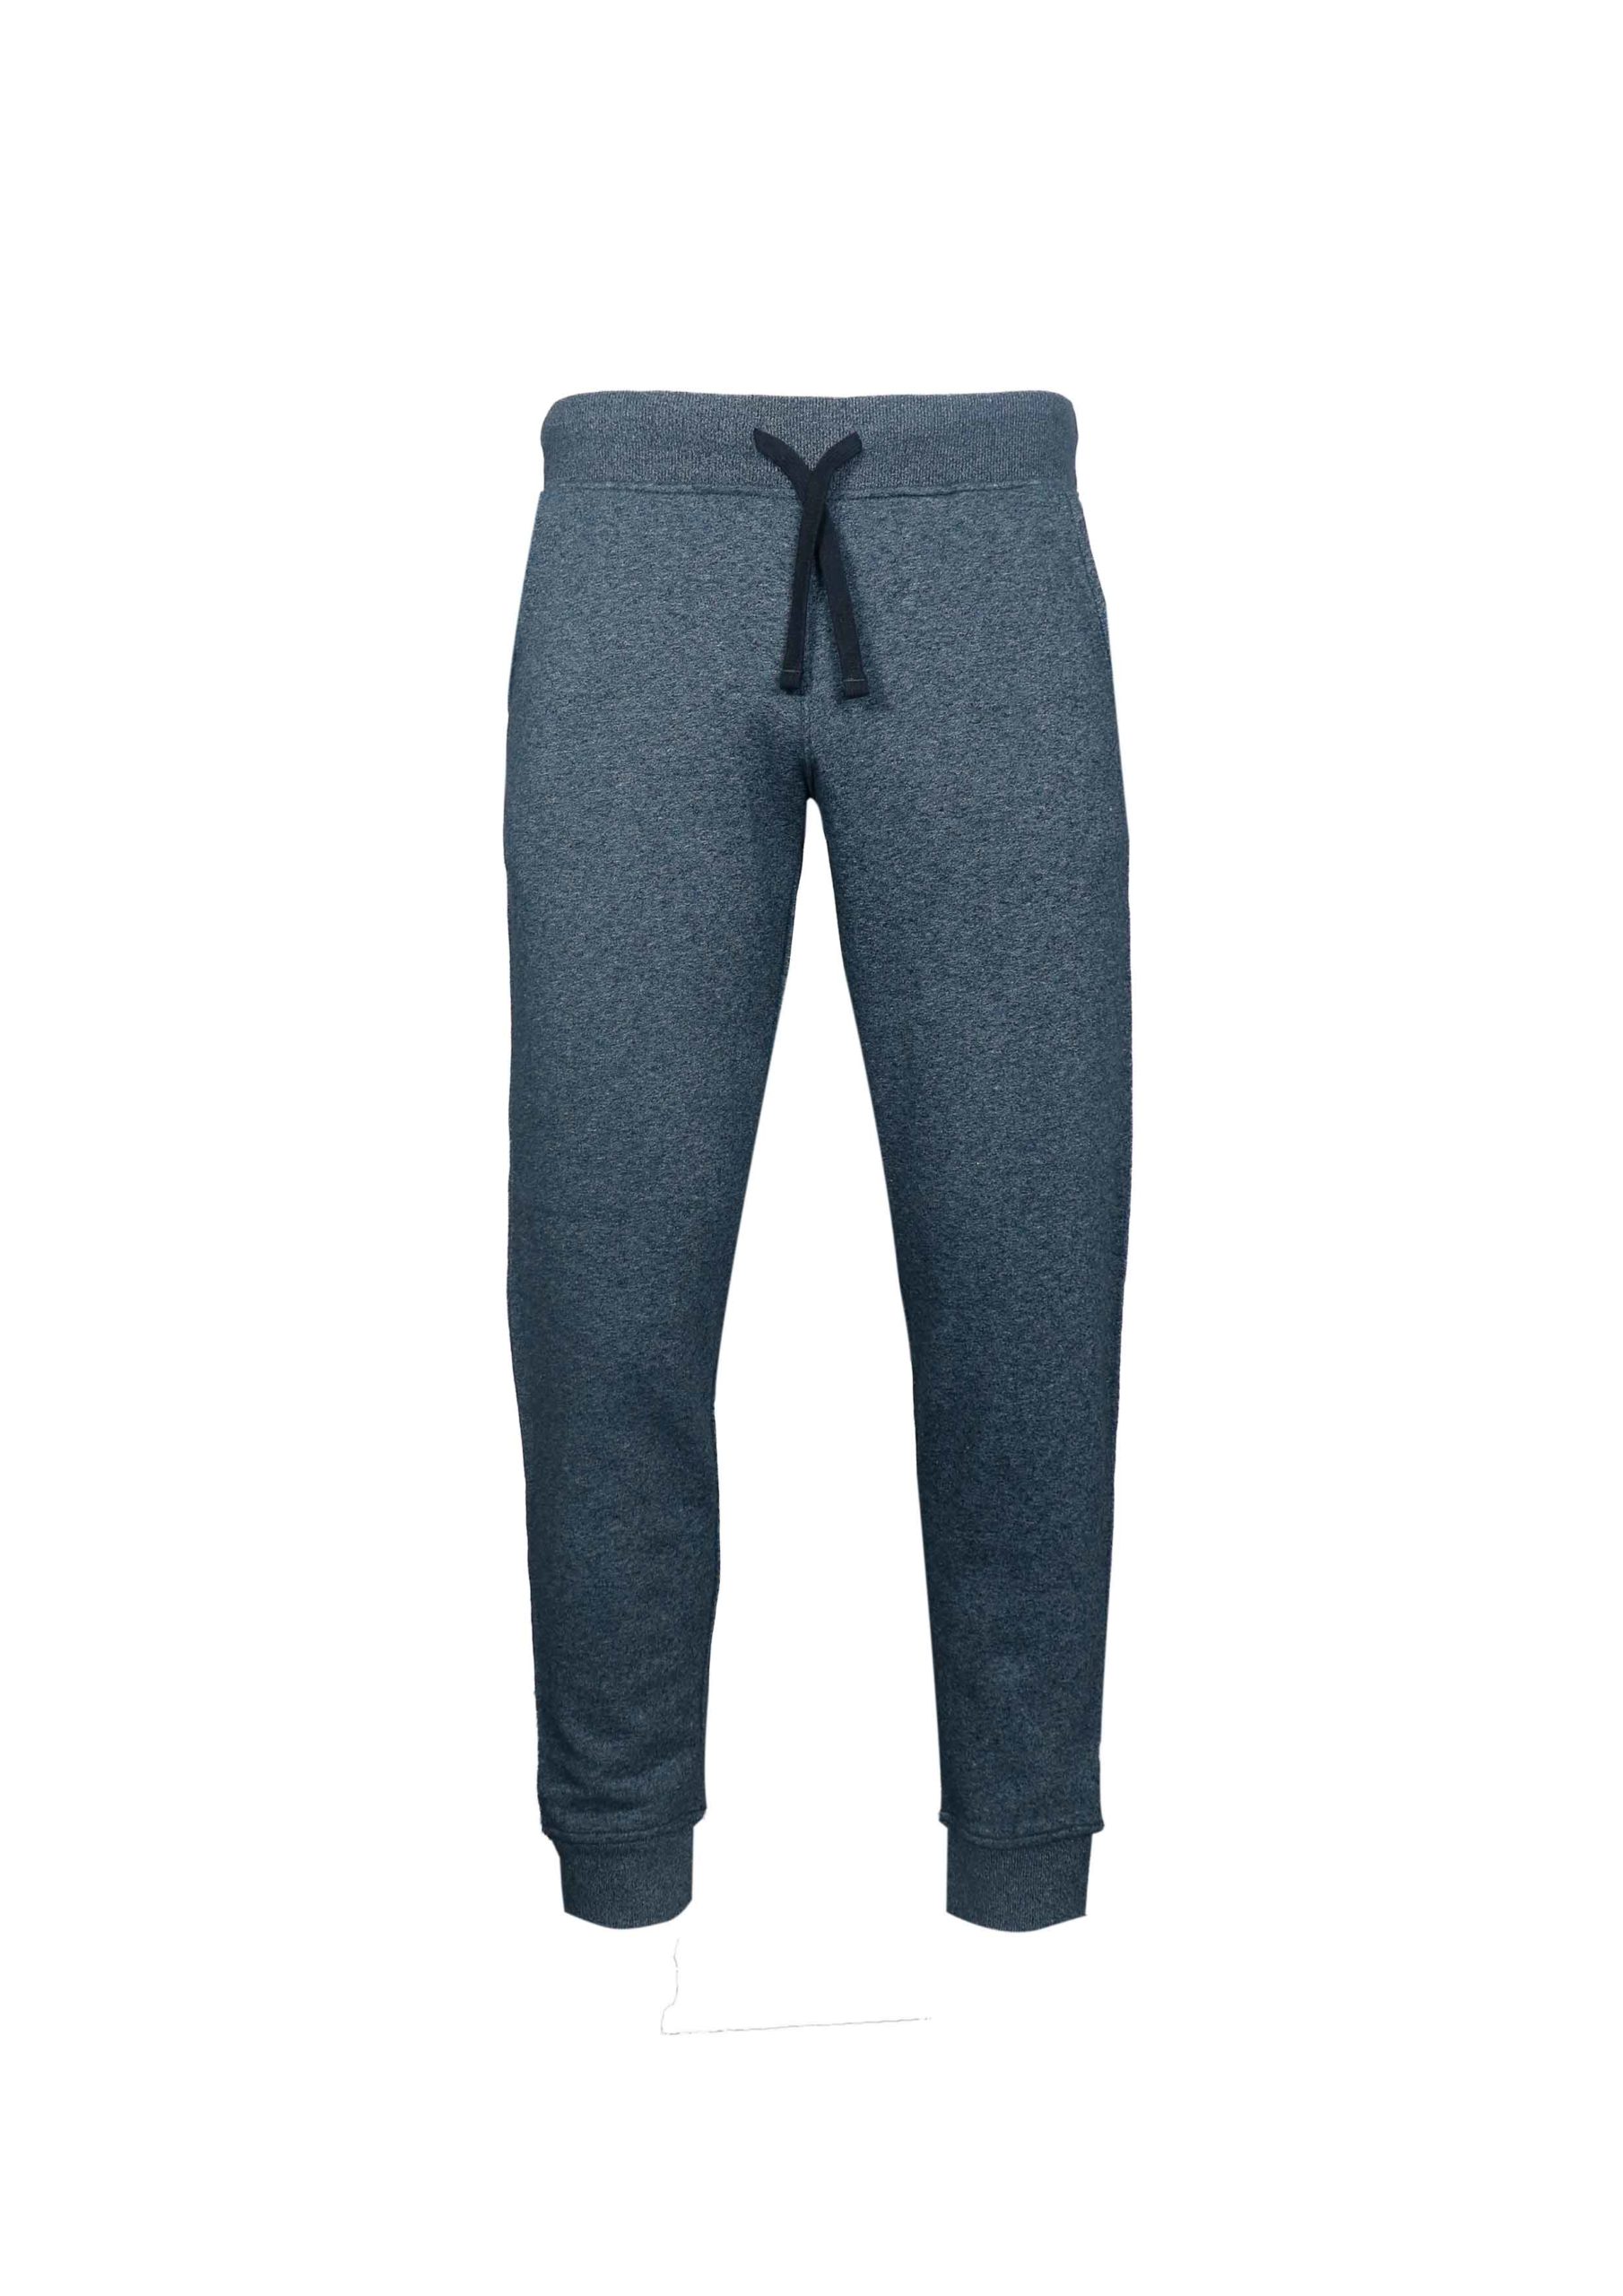 Men’s Trouser - Artisan Outfitters Ltd